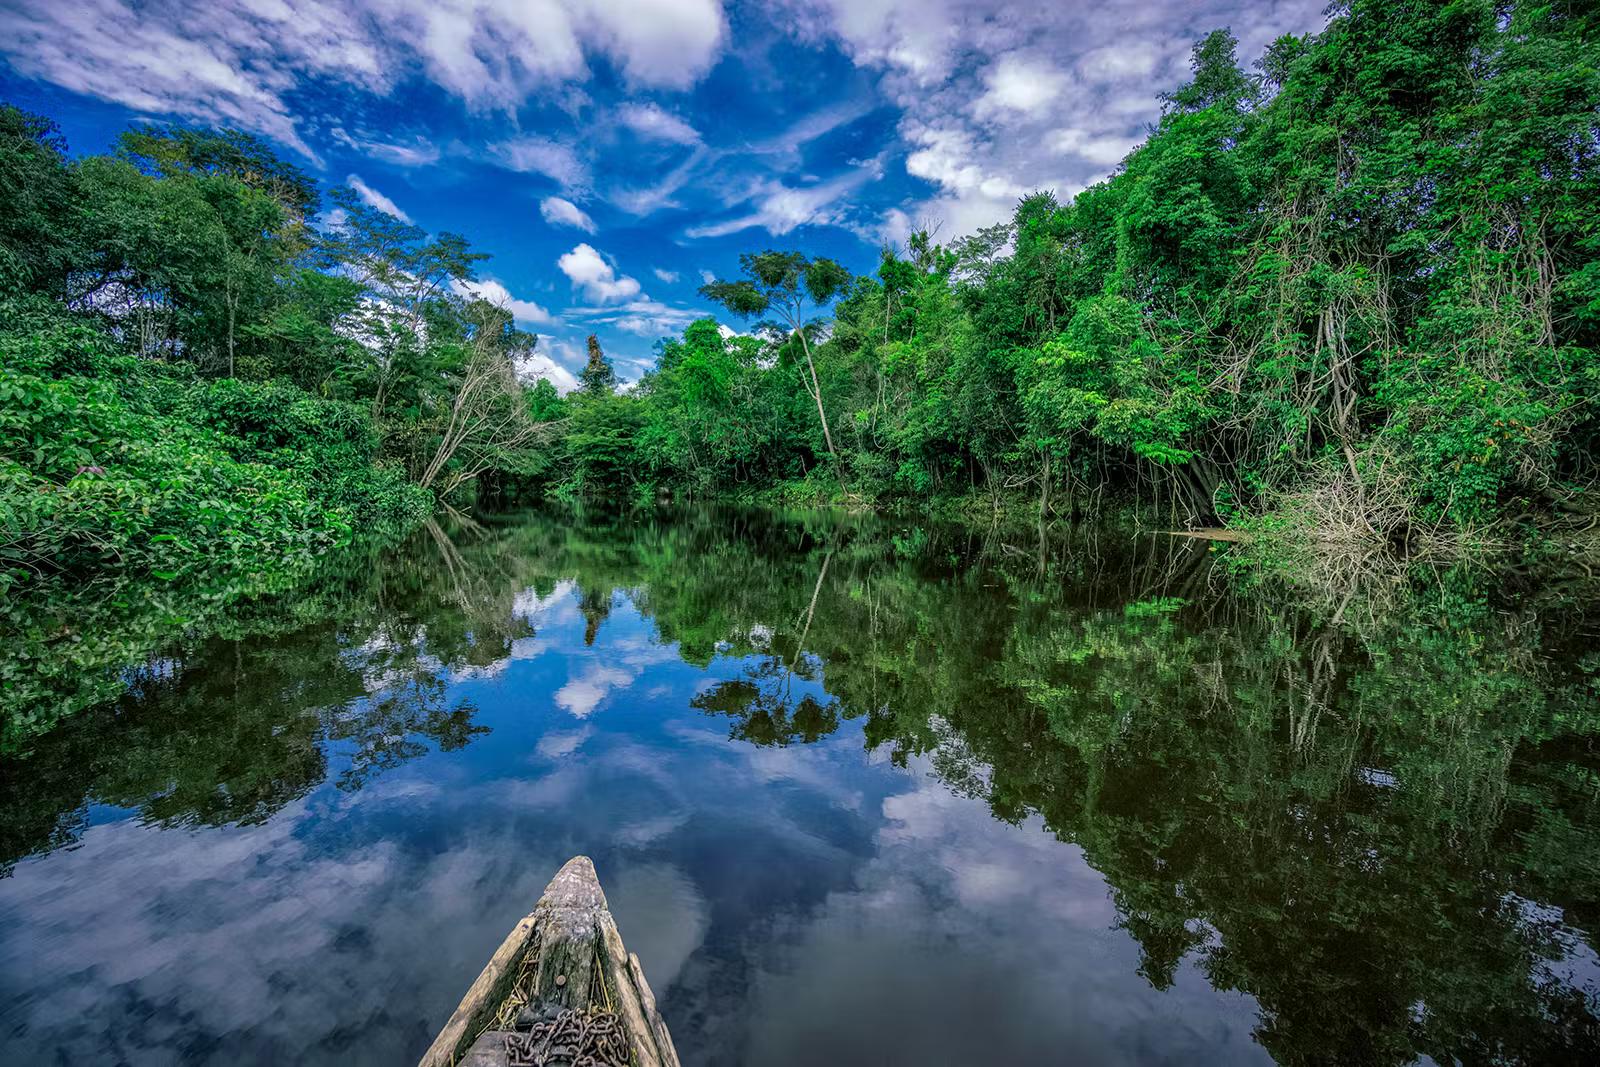 En träkanot driver nerför en glasig Nanay-flod med Amazonasskog på båda stränderna.  Fotot är taget från kanotens kropp, med bara spetsen i ram.  Den molniga blå himlen reflekteras i det stilla vattnet.